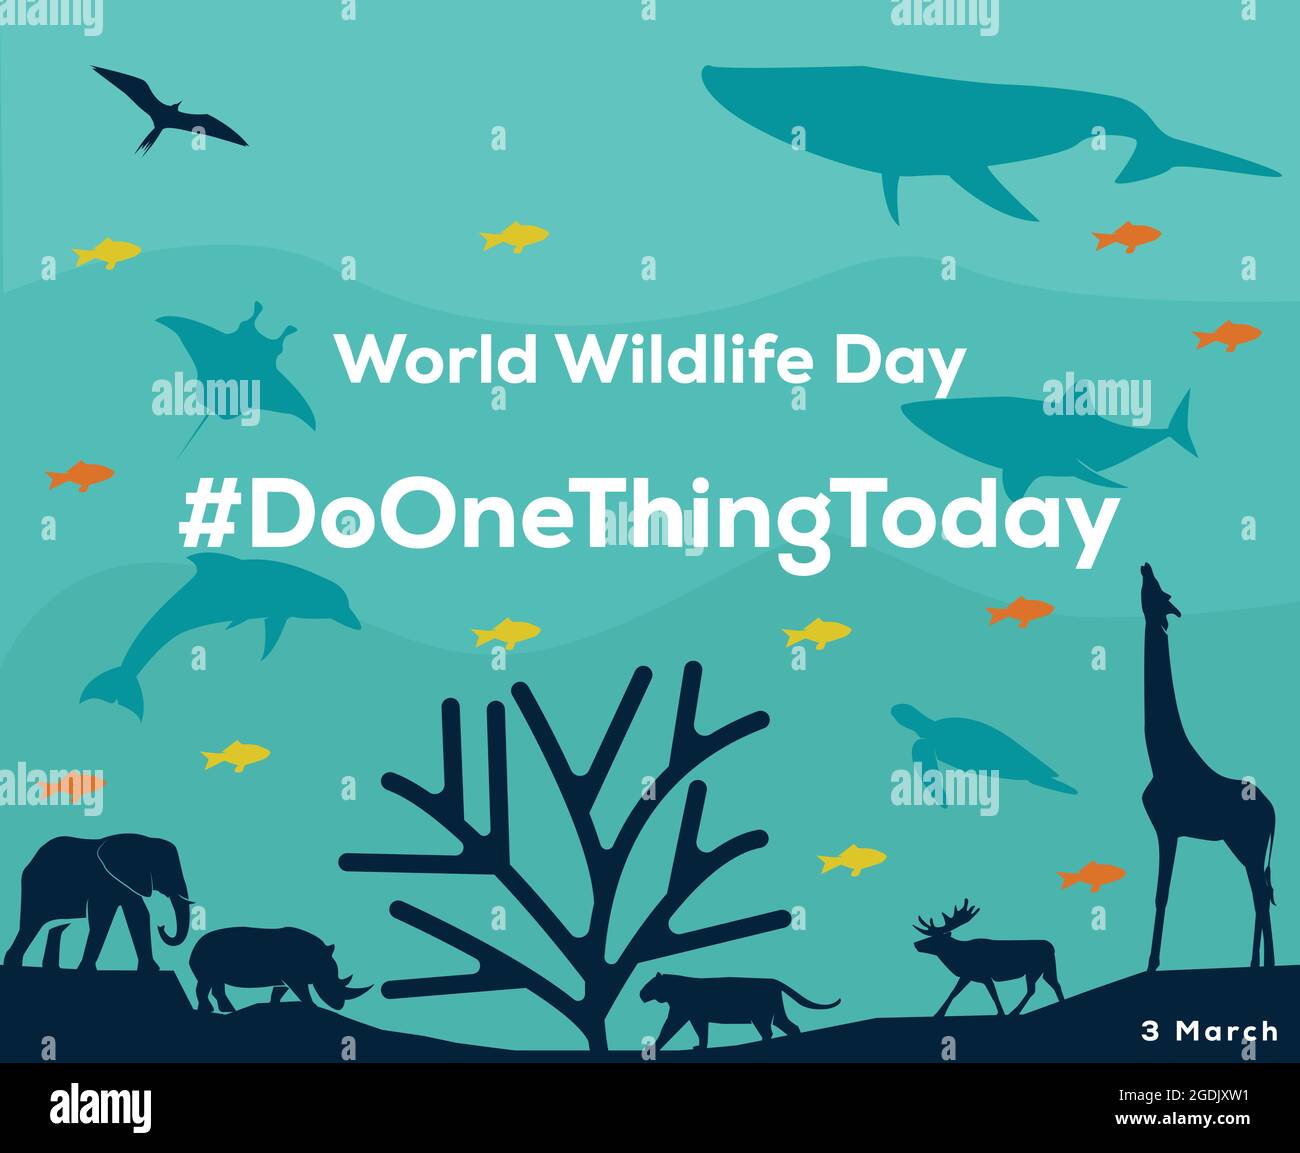 l'illustration de l'affiche de la journée mondiale de la faune à la conscience aide à maintenir toute la vie sur terre Illustration de Vecteur